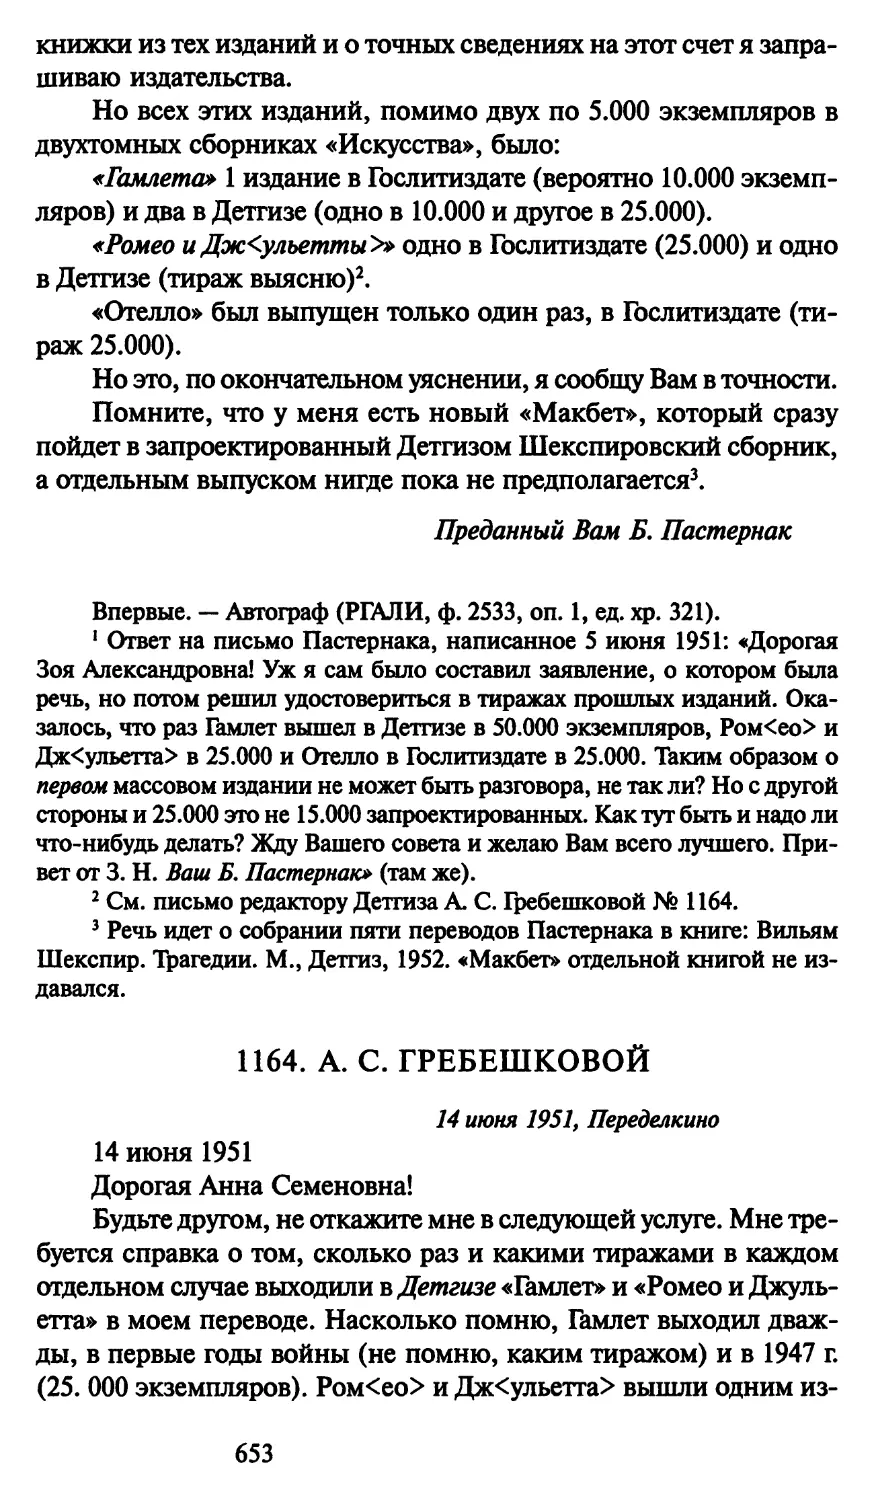 1164. А. С. Гребешковой 14 июня 1951